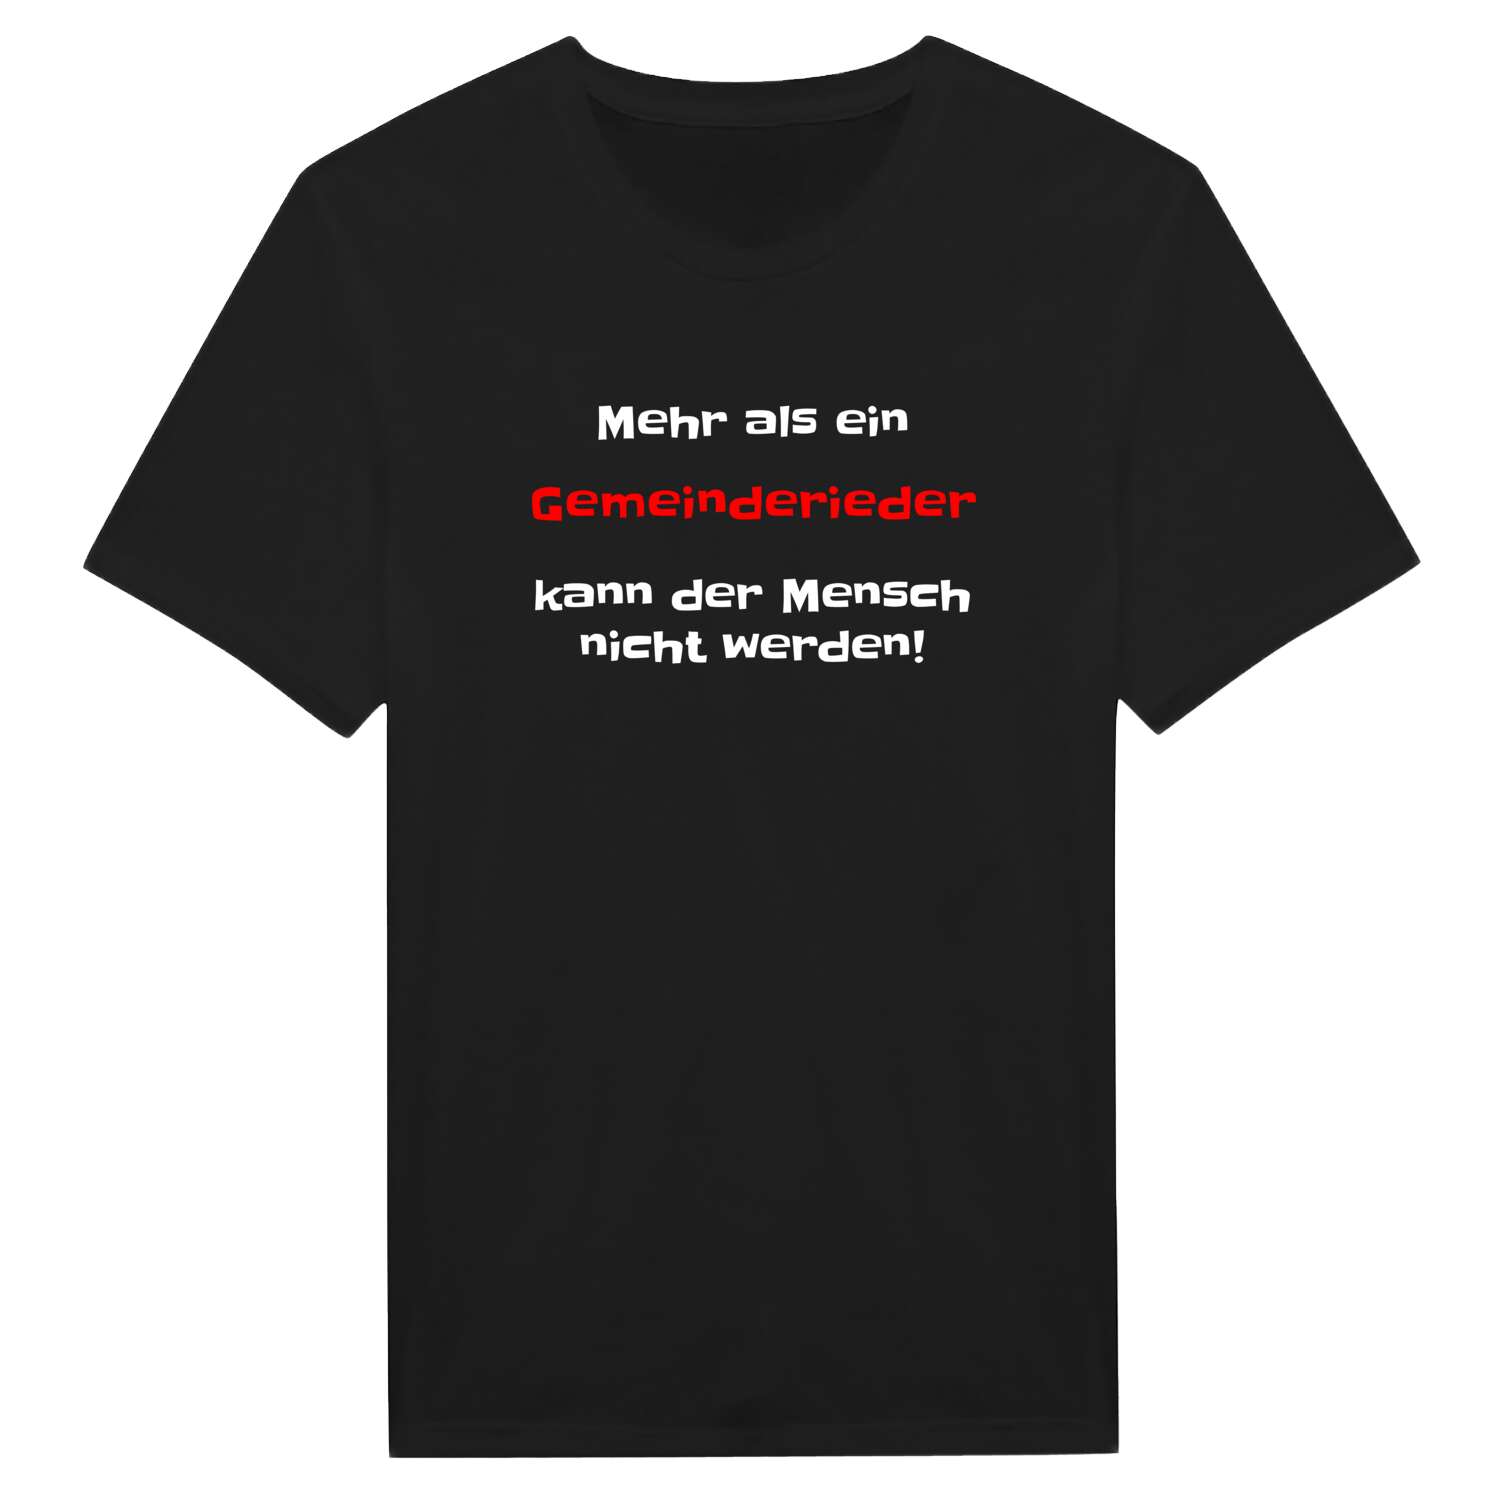 Gemeinderied T-Shirt »Mehr als ein«